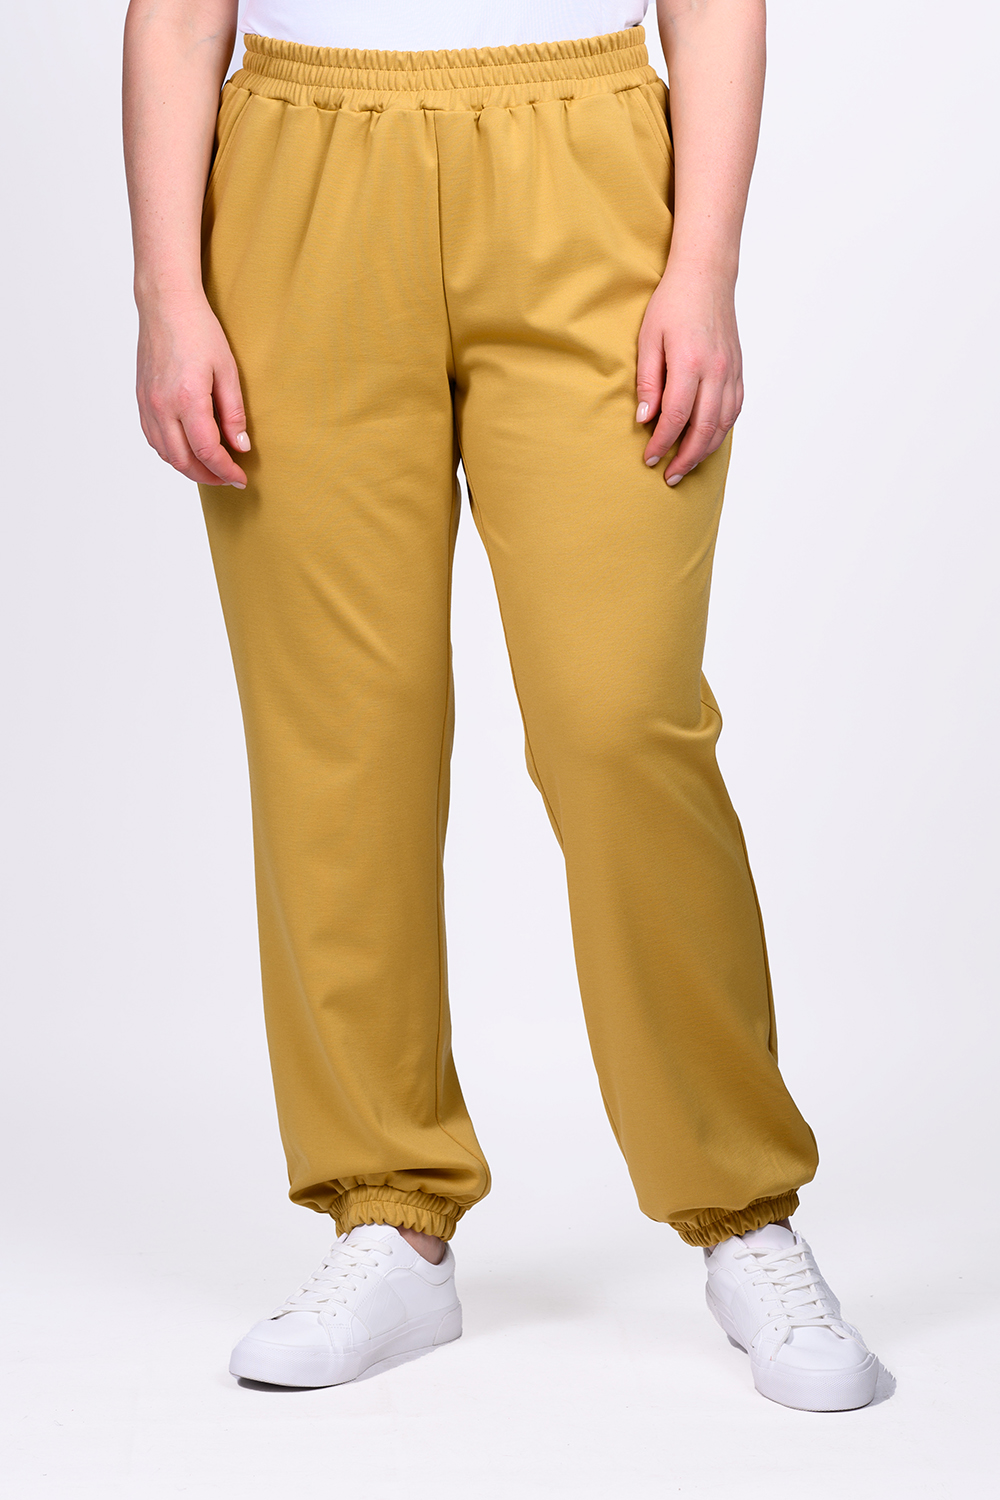 Спортивные брюки женские SVESTA P463 желтые 54 RU